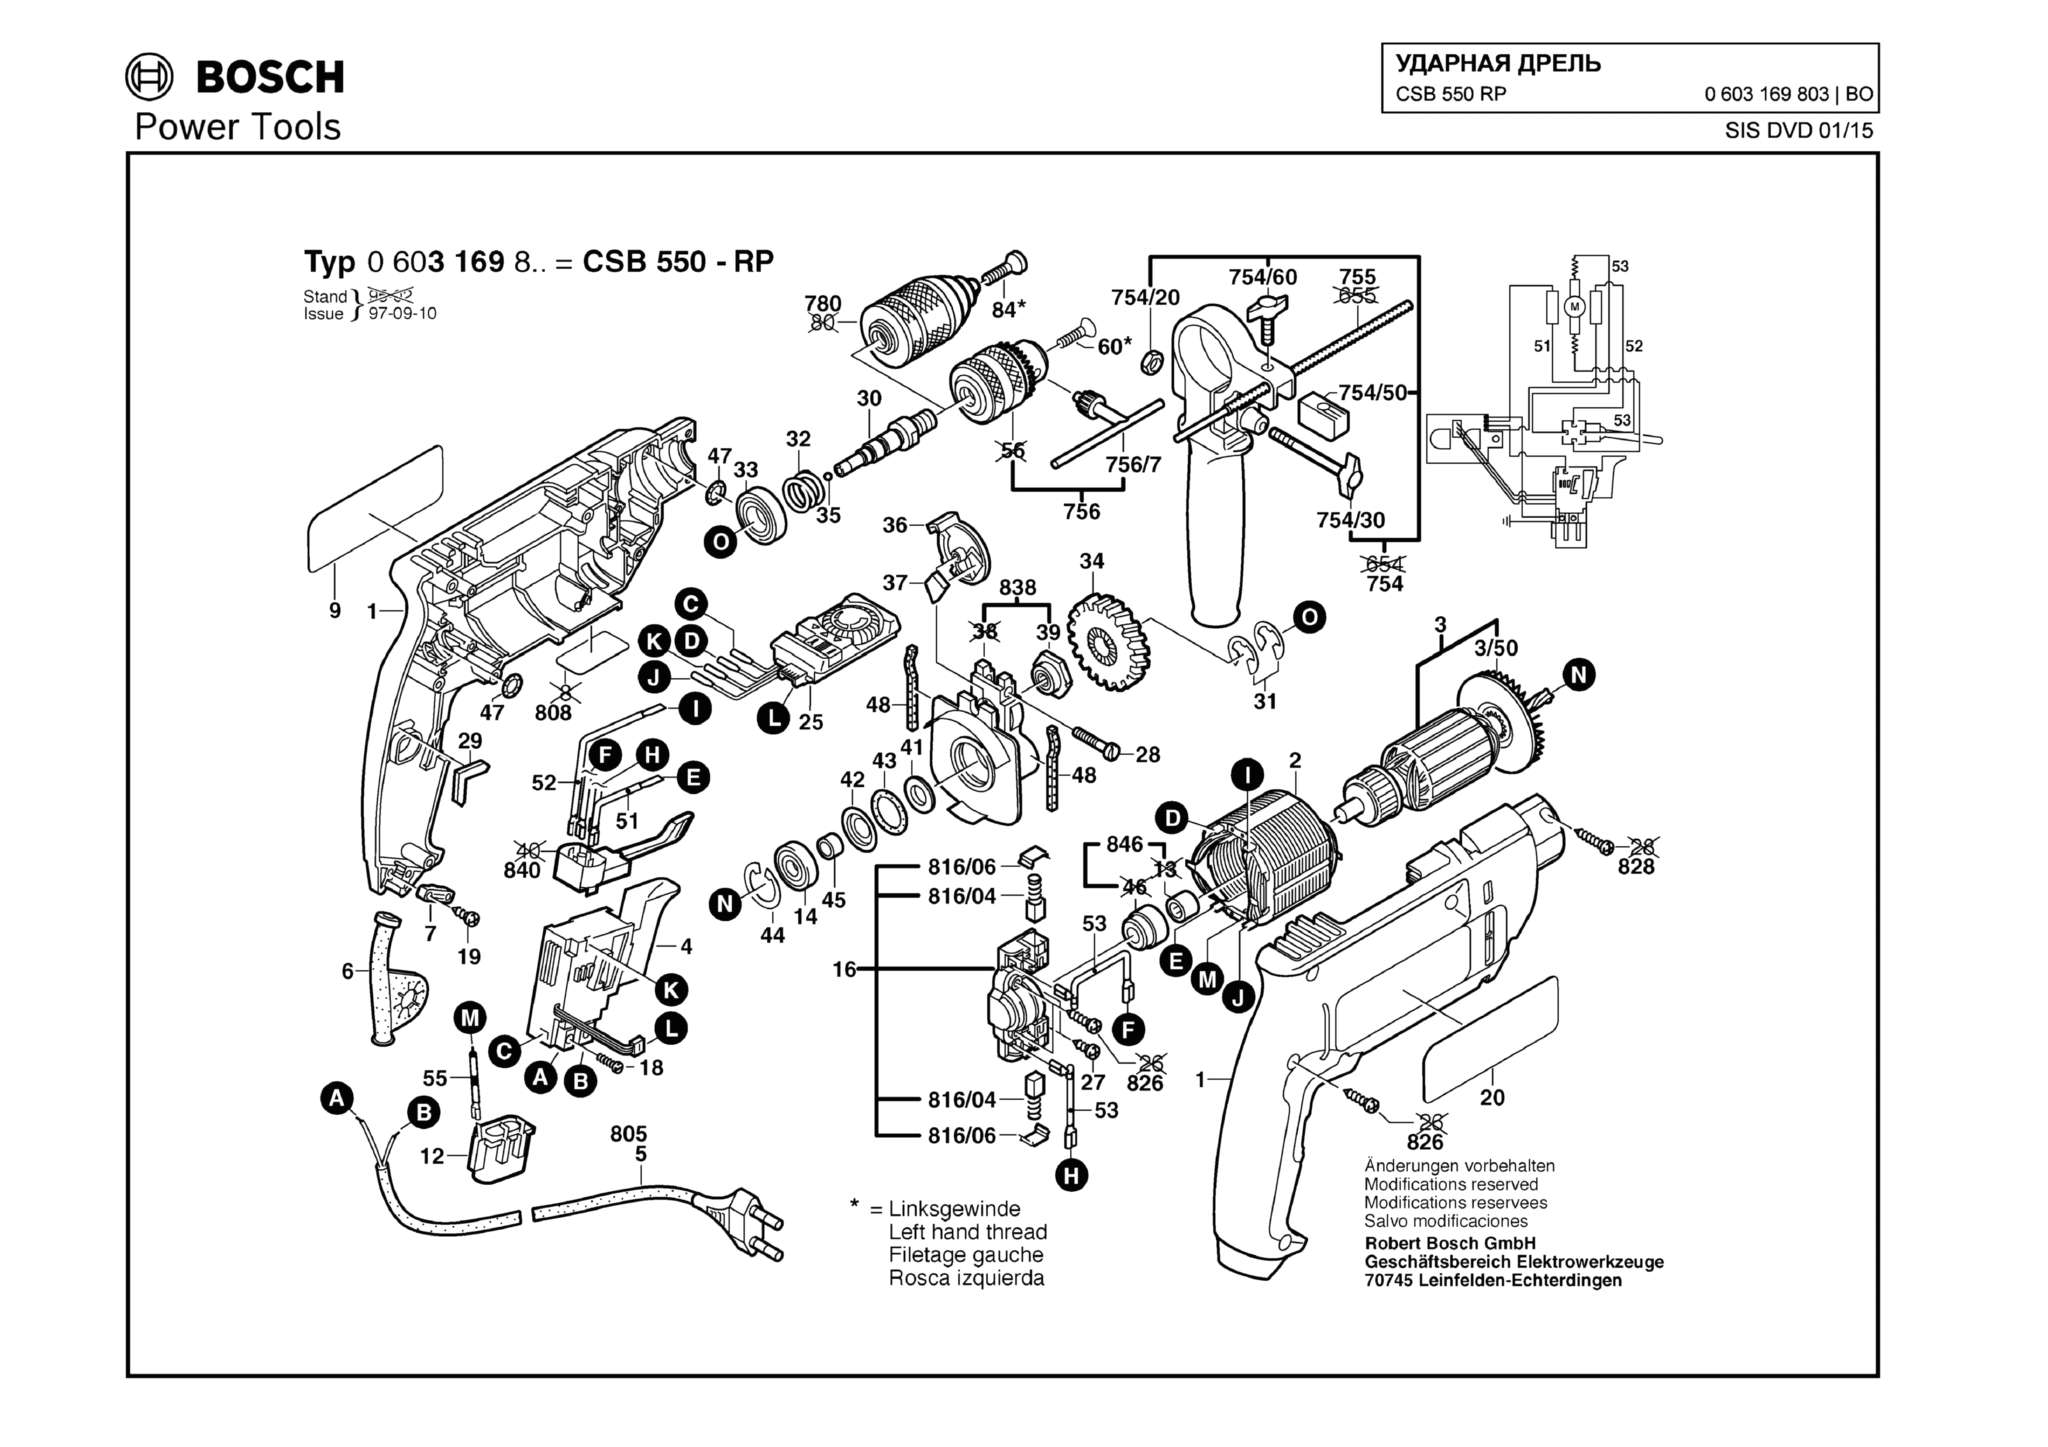 Запчасти, схема и деталировка Bosch CSB 550 RP (ТИП 0603169803)